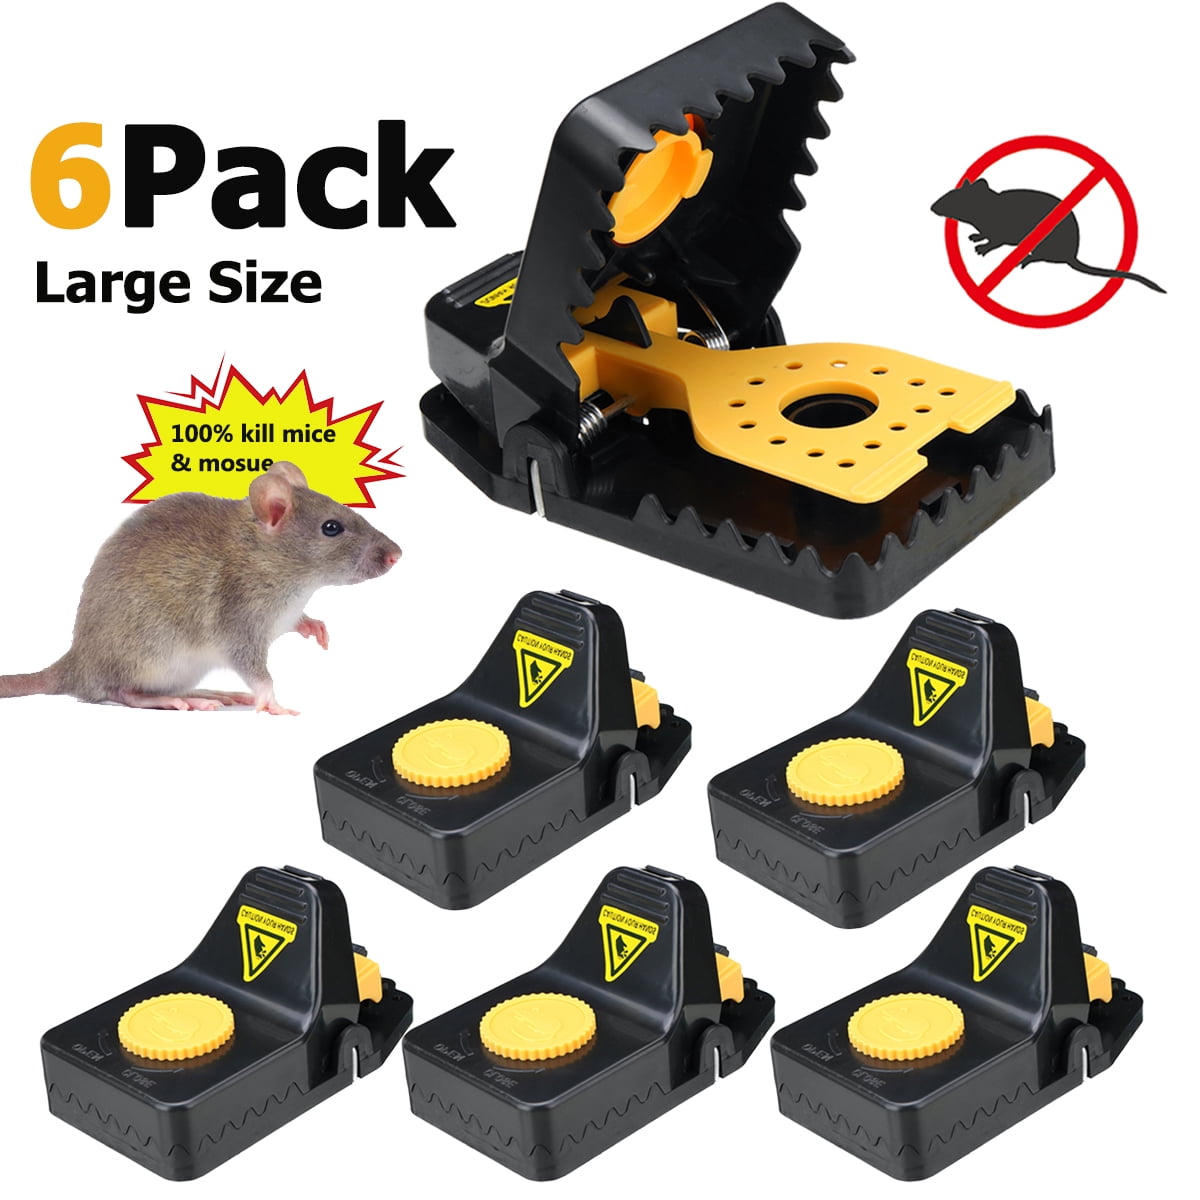 6pcs Reusable Mouse Traps Rat Trap Rodent Snap Trap Mice Trap Catcher Killer